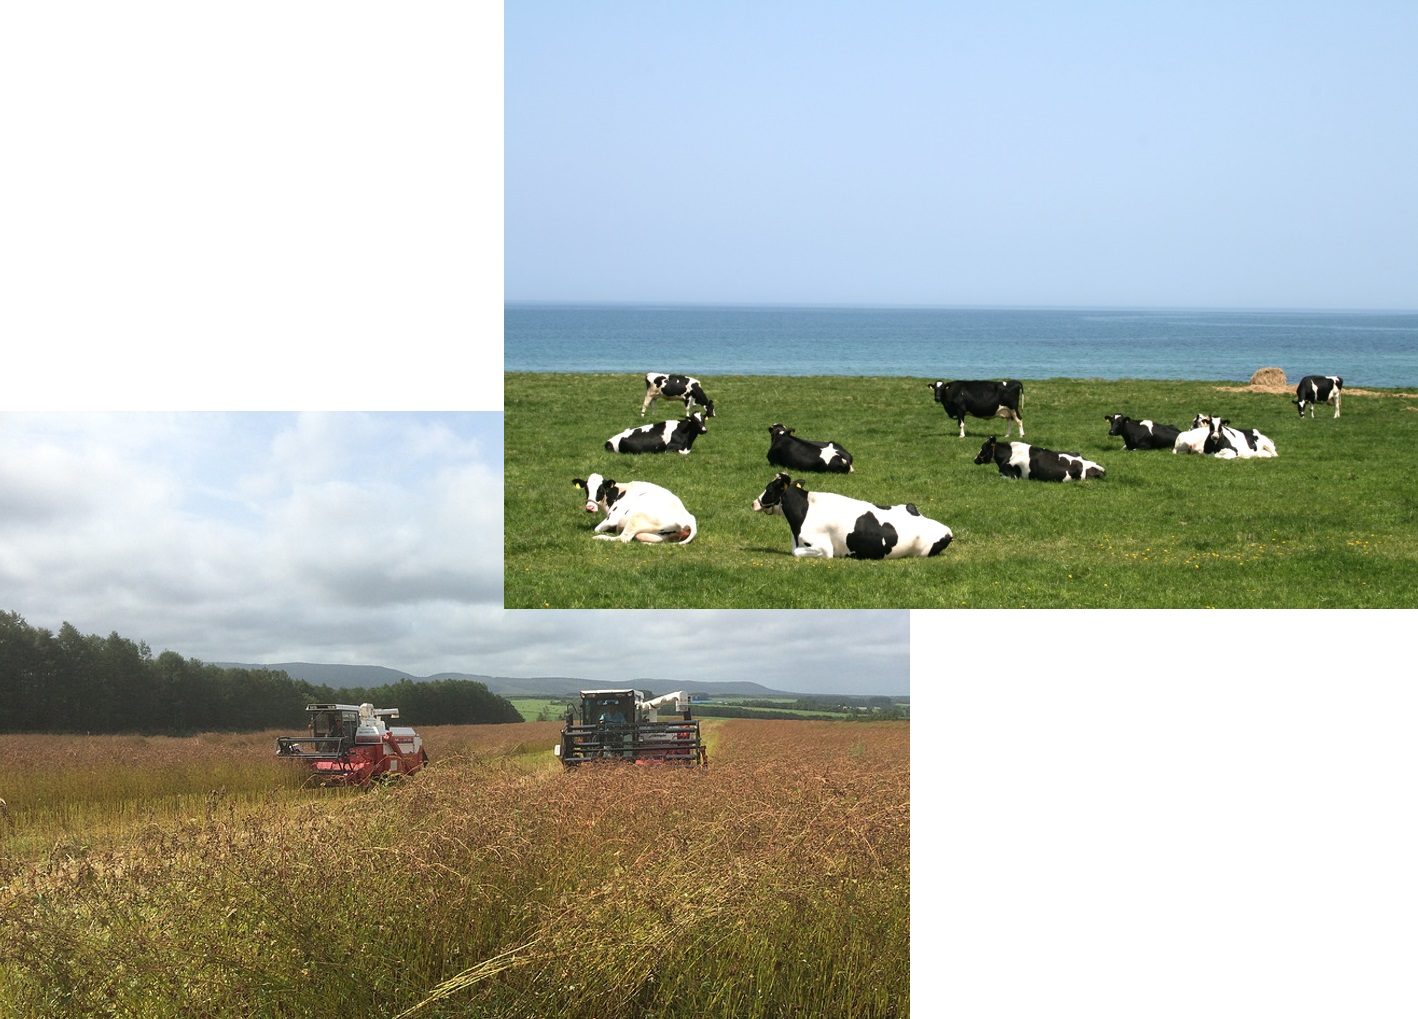 海を背景に牧草地で牛が座っている画像とコンバインが韃靼そばを収穫している画像